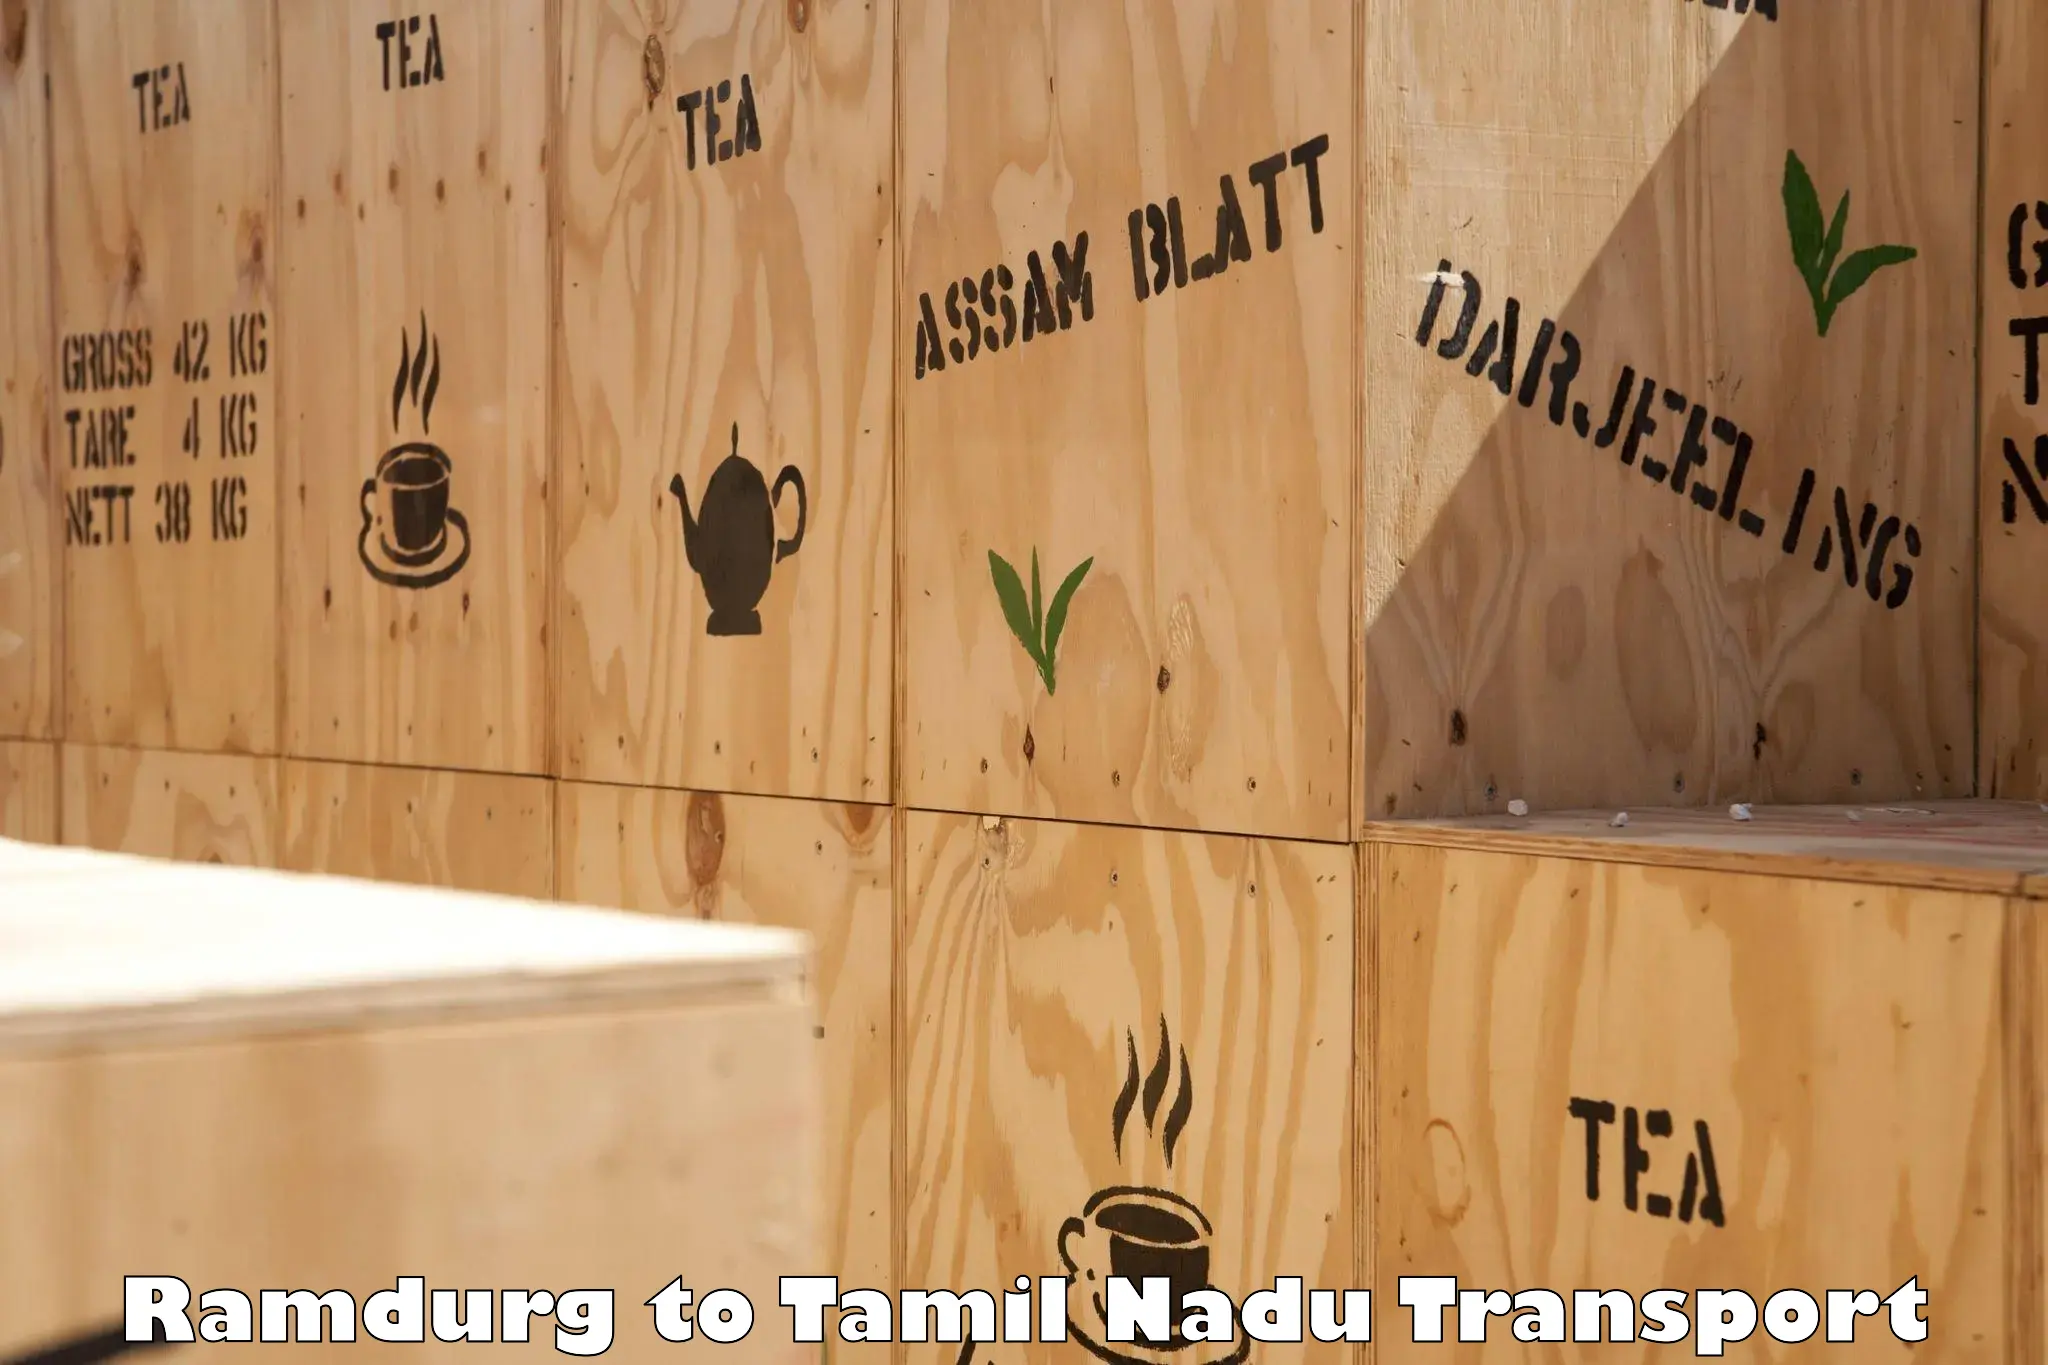 Transport shared services Ramdurg to Tamil Nadu